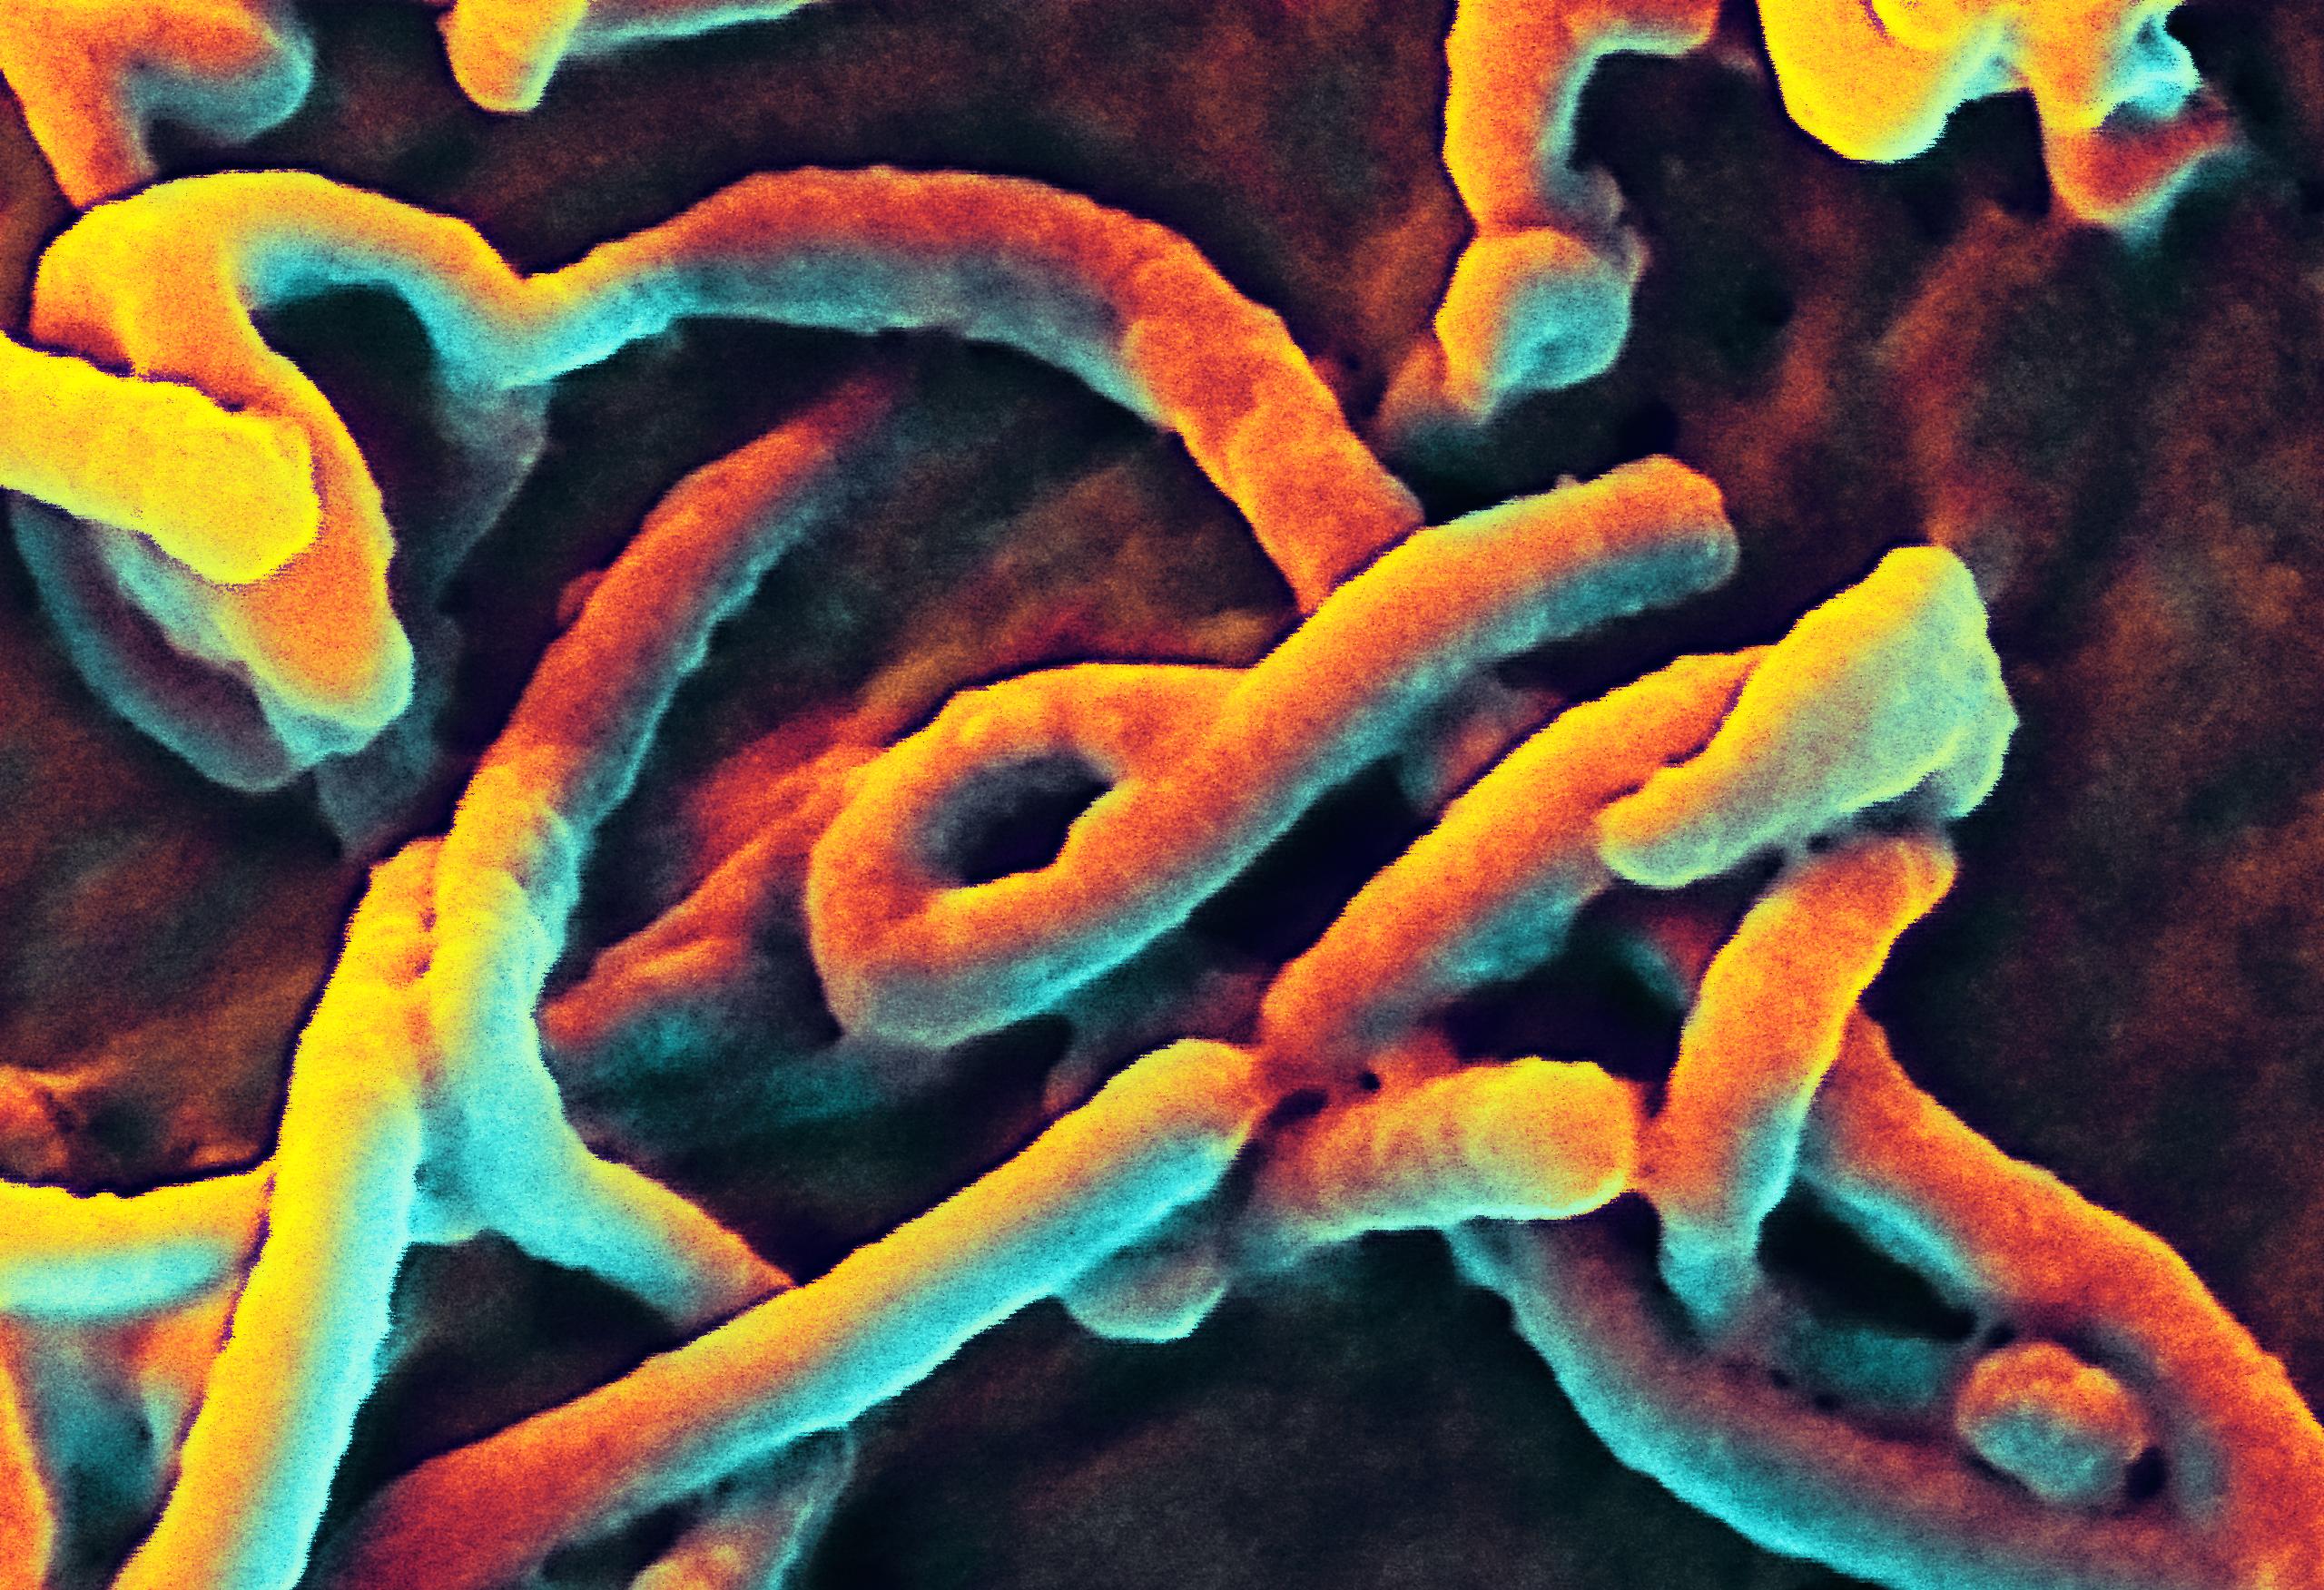 Ebolajárvány a Kalifátusban?